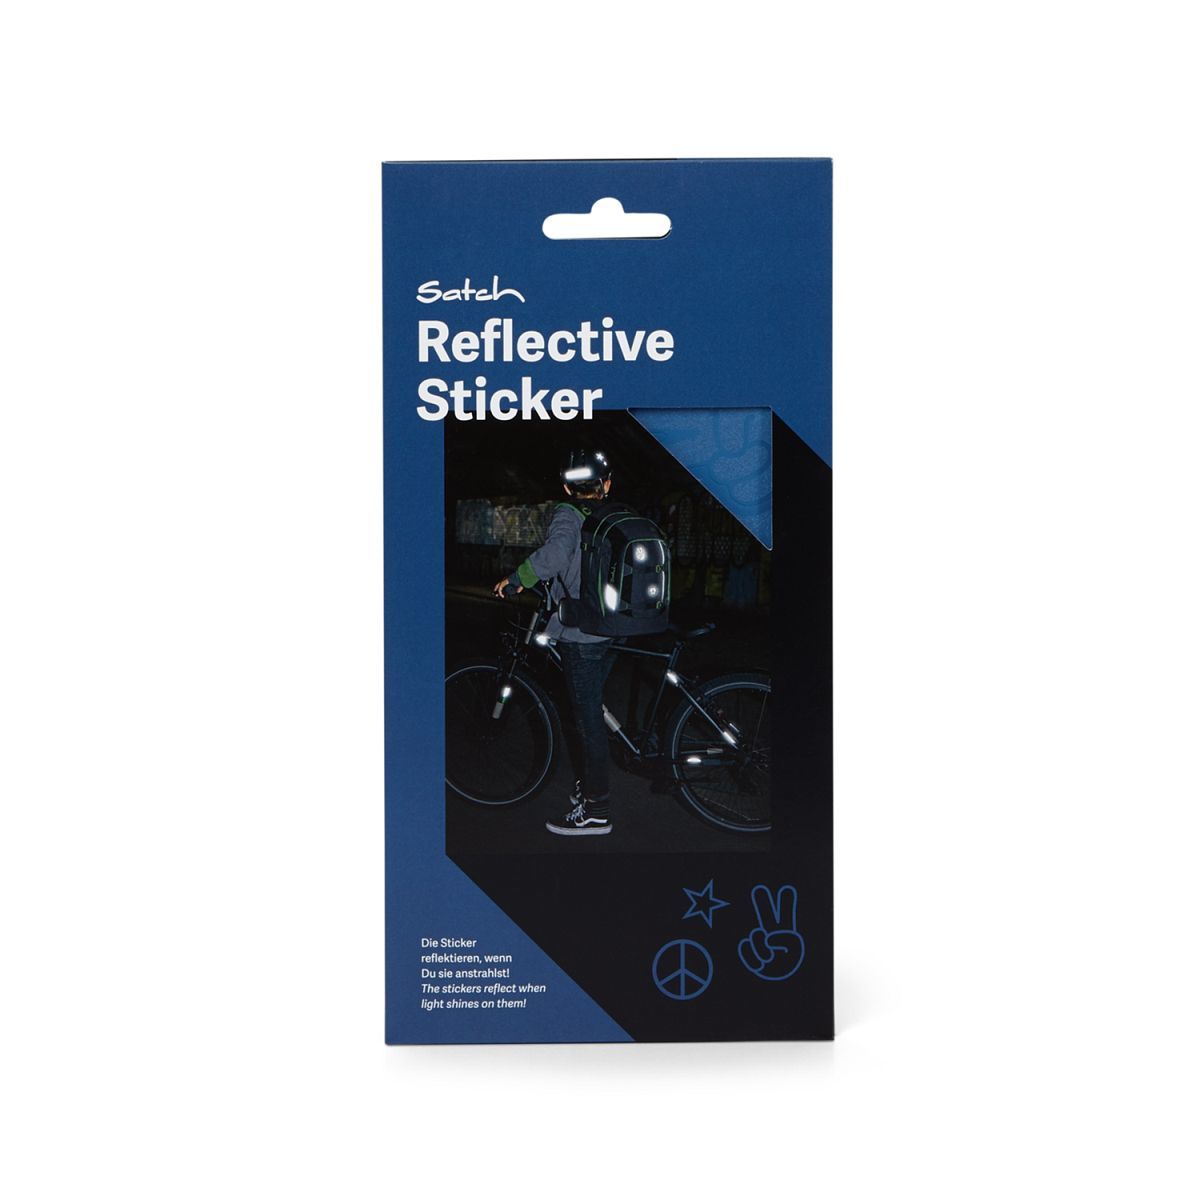 Satch Reflective Sticker blau Frontansicht Verpackung